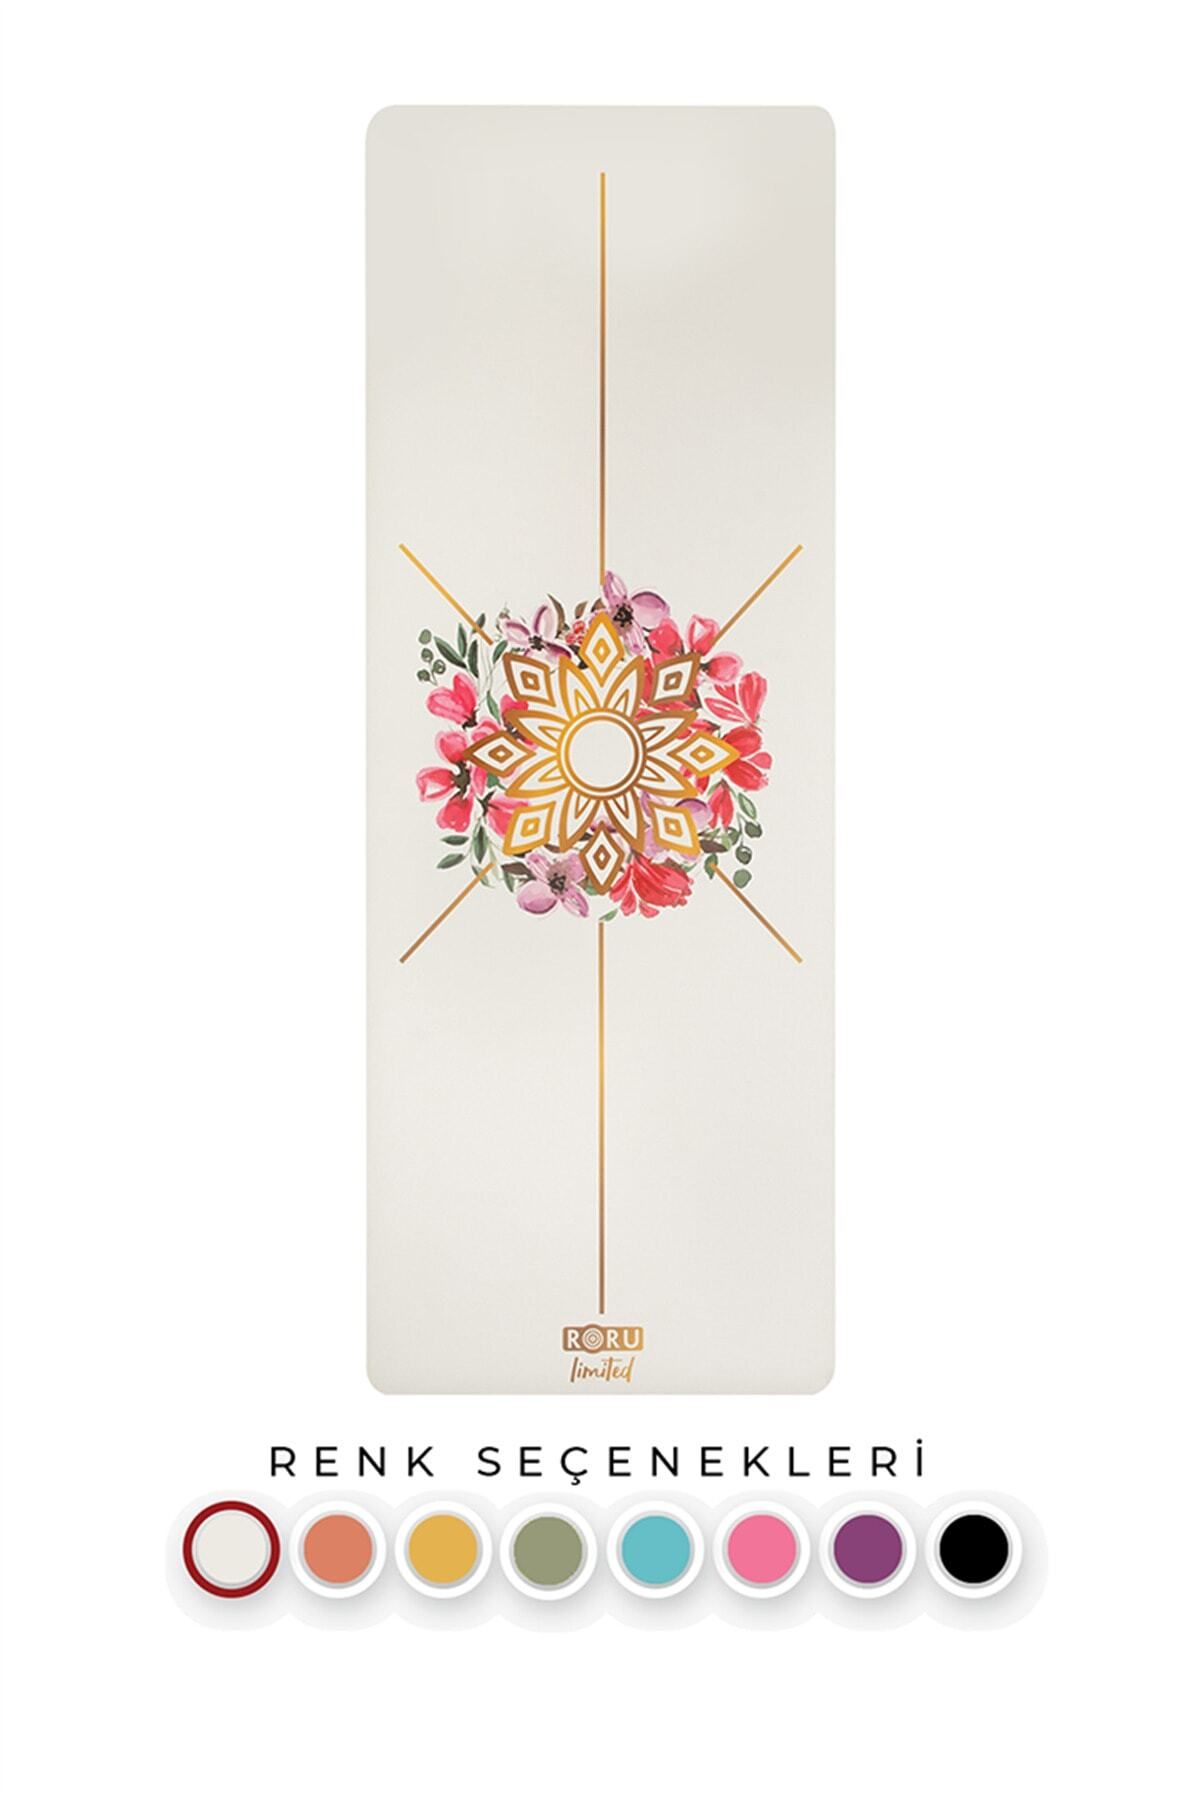 Roru Sun Serisi Yoga Matı-flower 5mm – Sınırlı Üretim